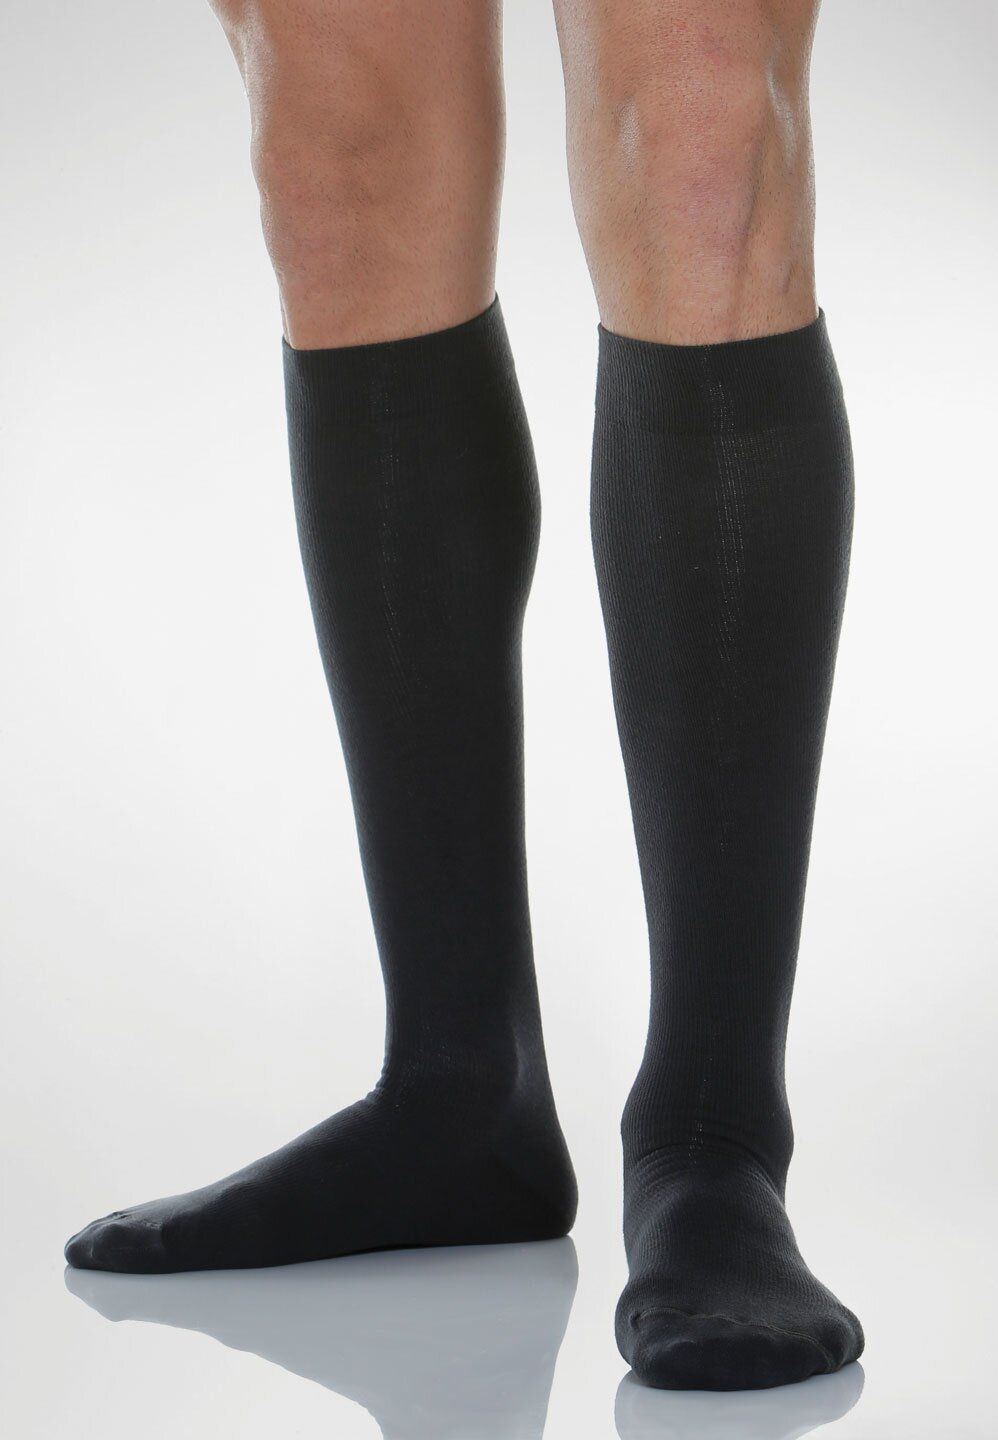 Relaxsan Cotton Socks Гольфы с хлопком 1 класс компрессии Унисекс, р. 4, арт. 820 (18-22 мм рт.ст.), 140 DEN (черного цвета. с хлопком), пара, 1 шт.